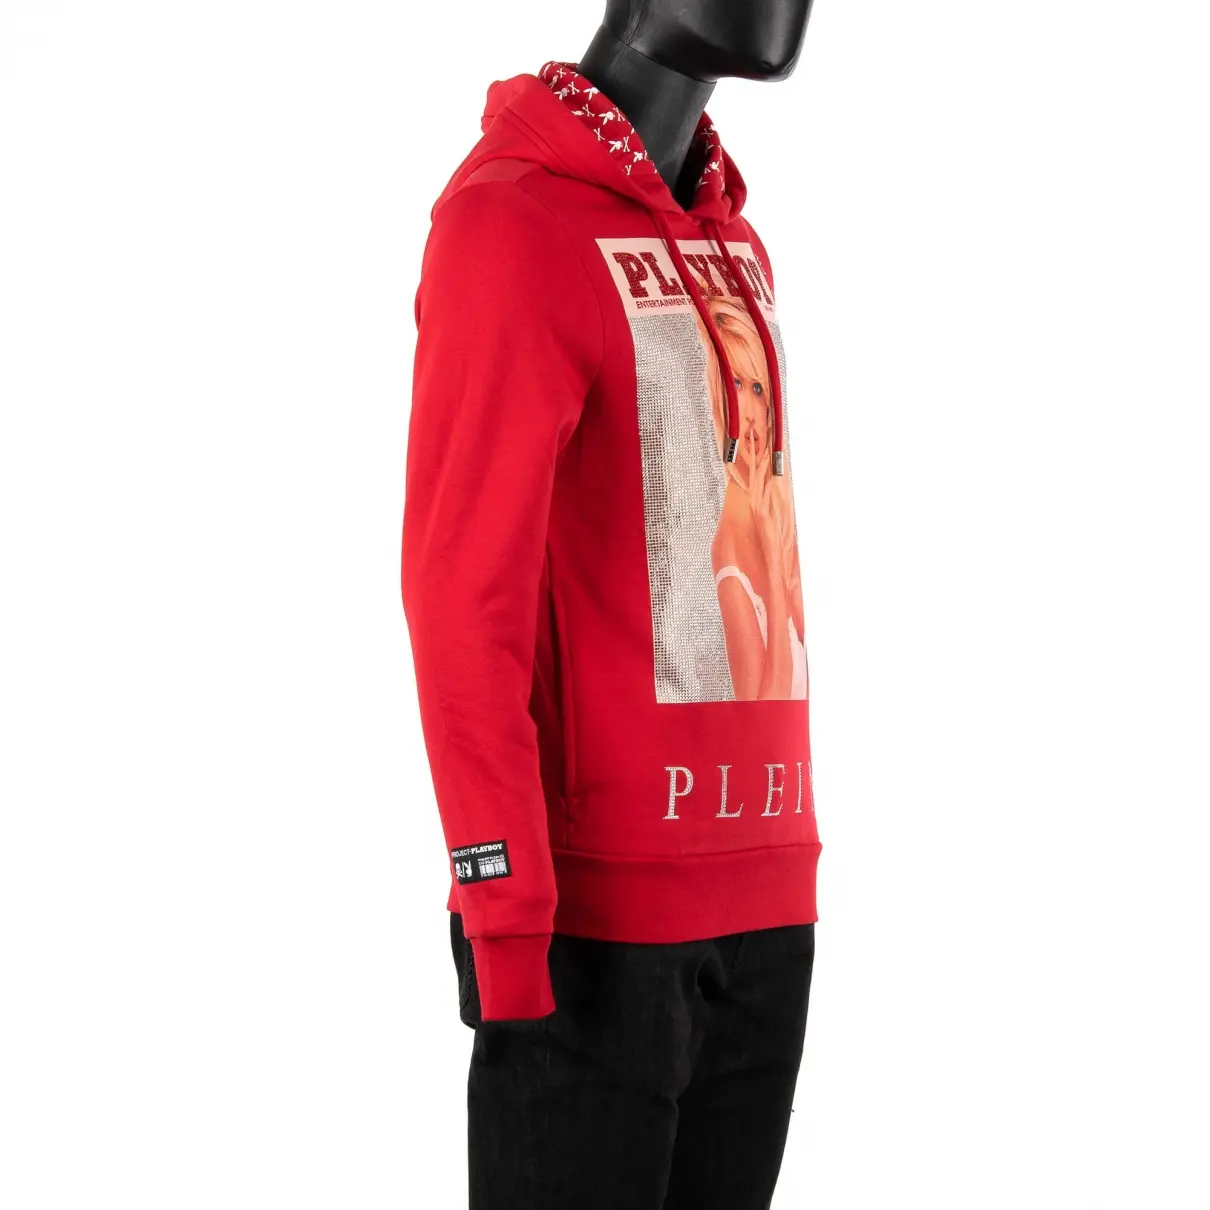 Buy Philipp Plein Sweatshirt online